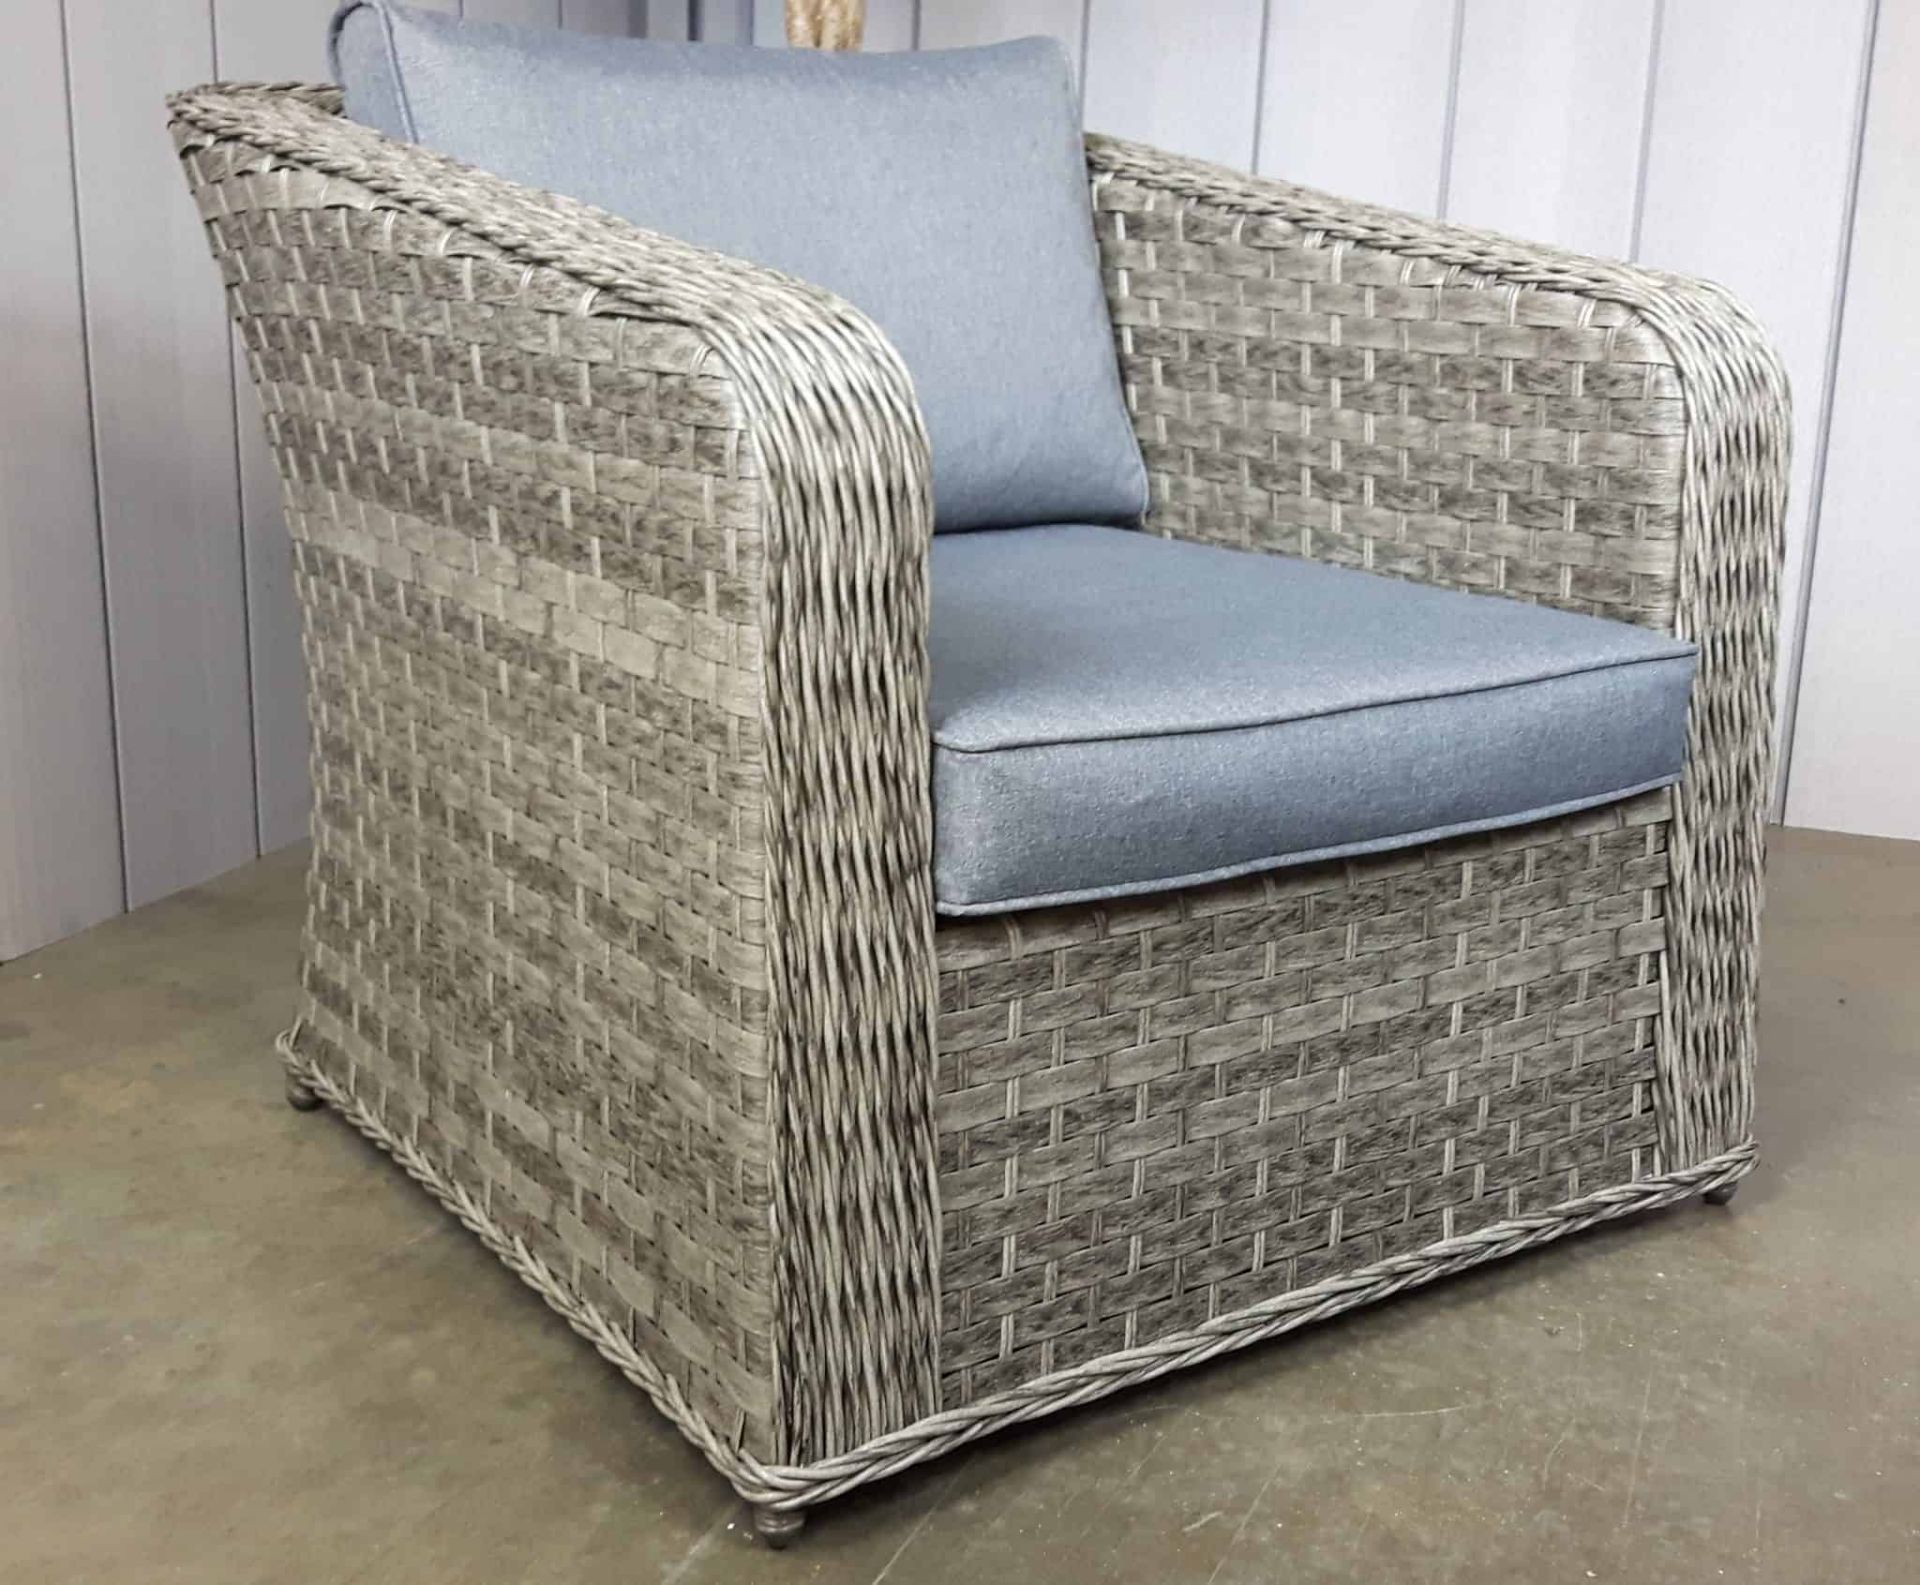 Windsor Executive Sofa Set Fully Welded Aluminium - Image 2 of 5